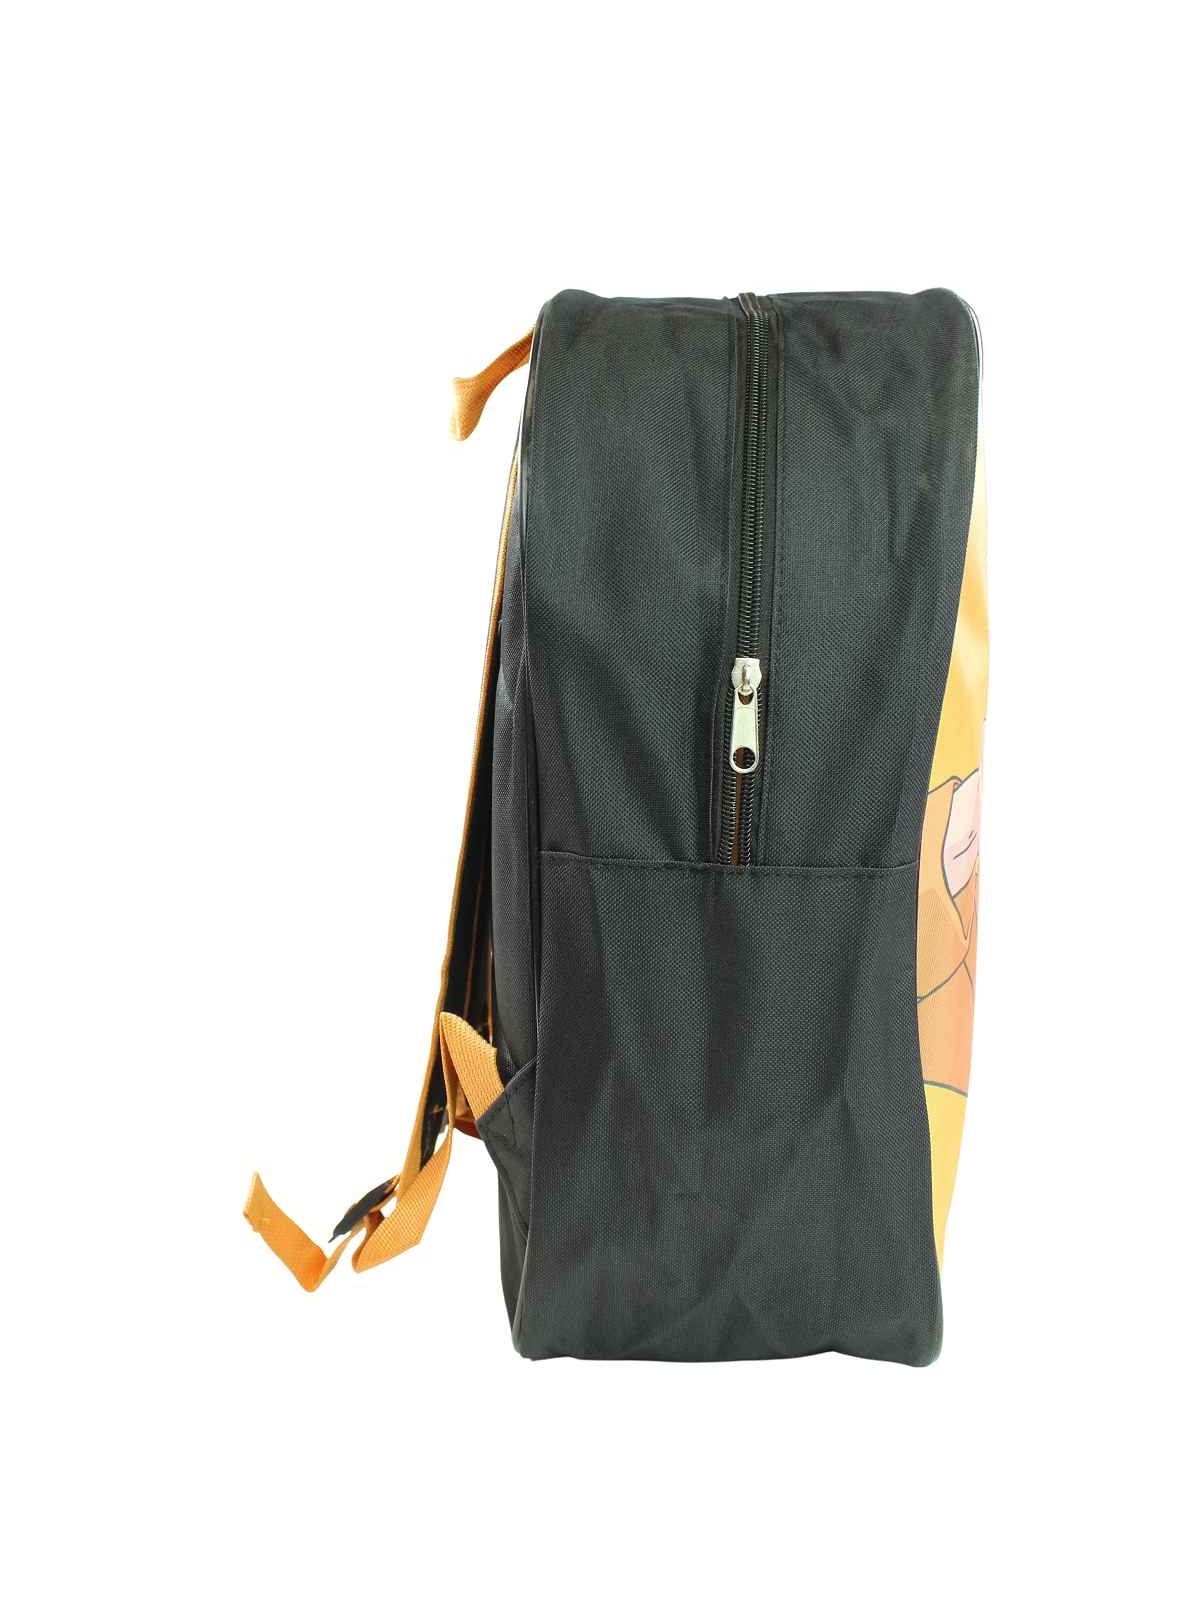 Naruto Backpack 40x30x15